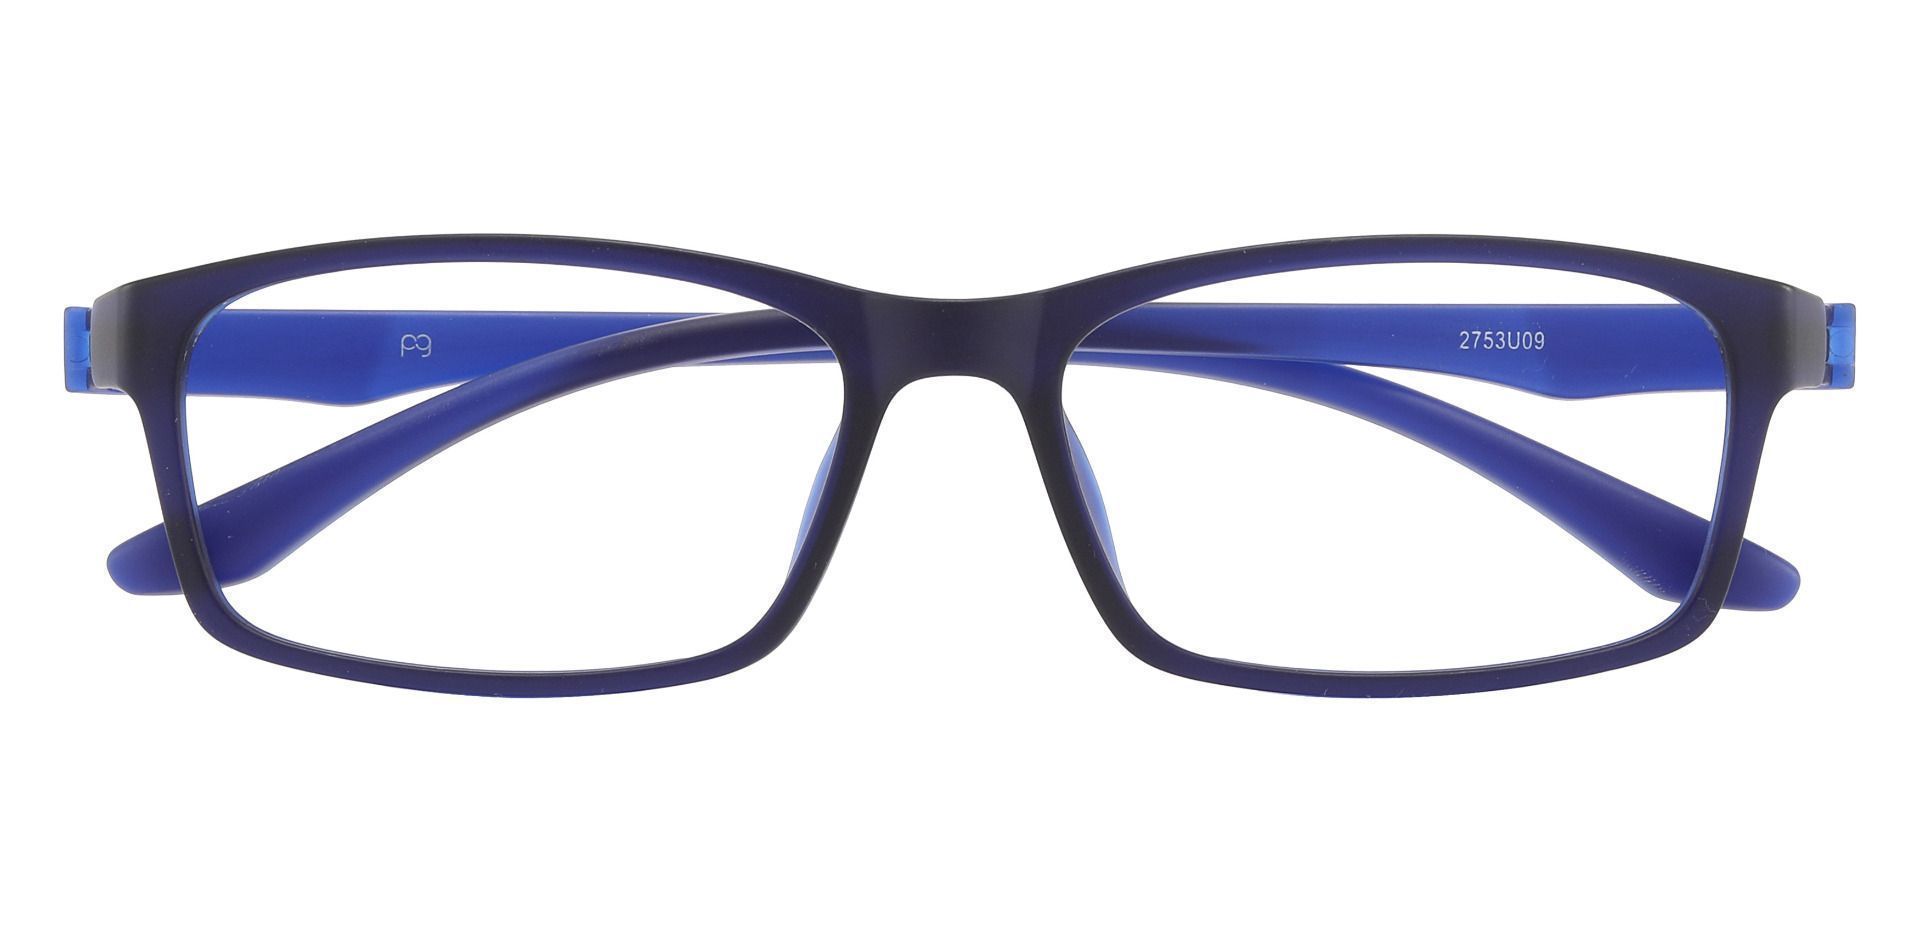 Poplar Rectangle Blue Light Blocking Glasses - Matte Navy 